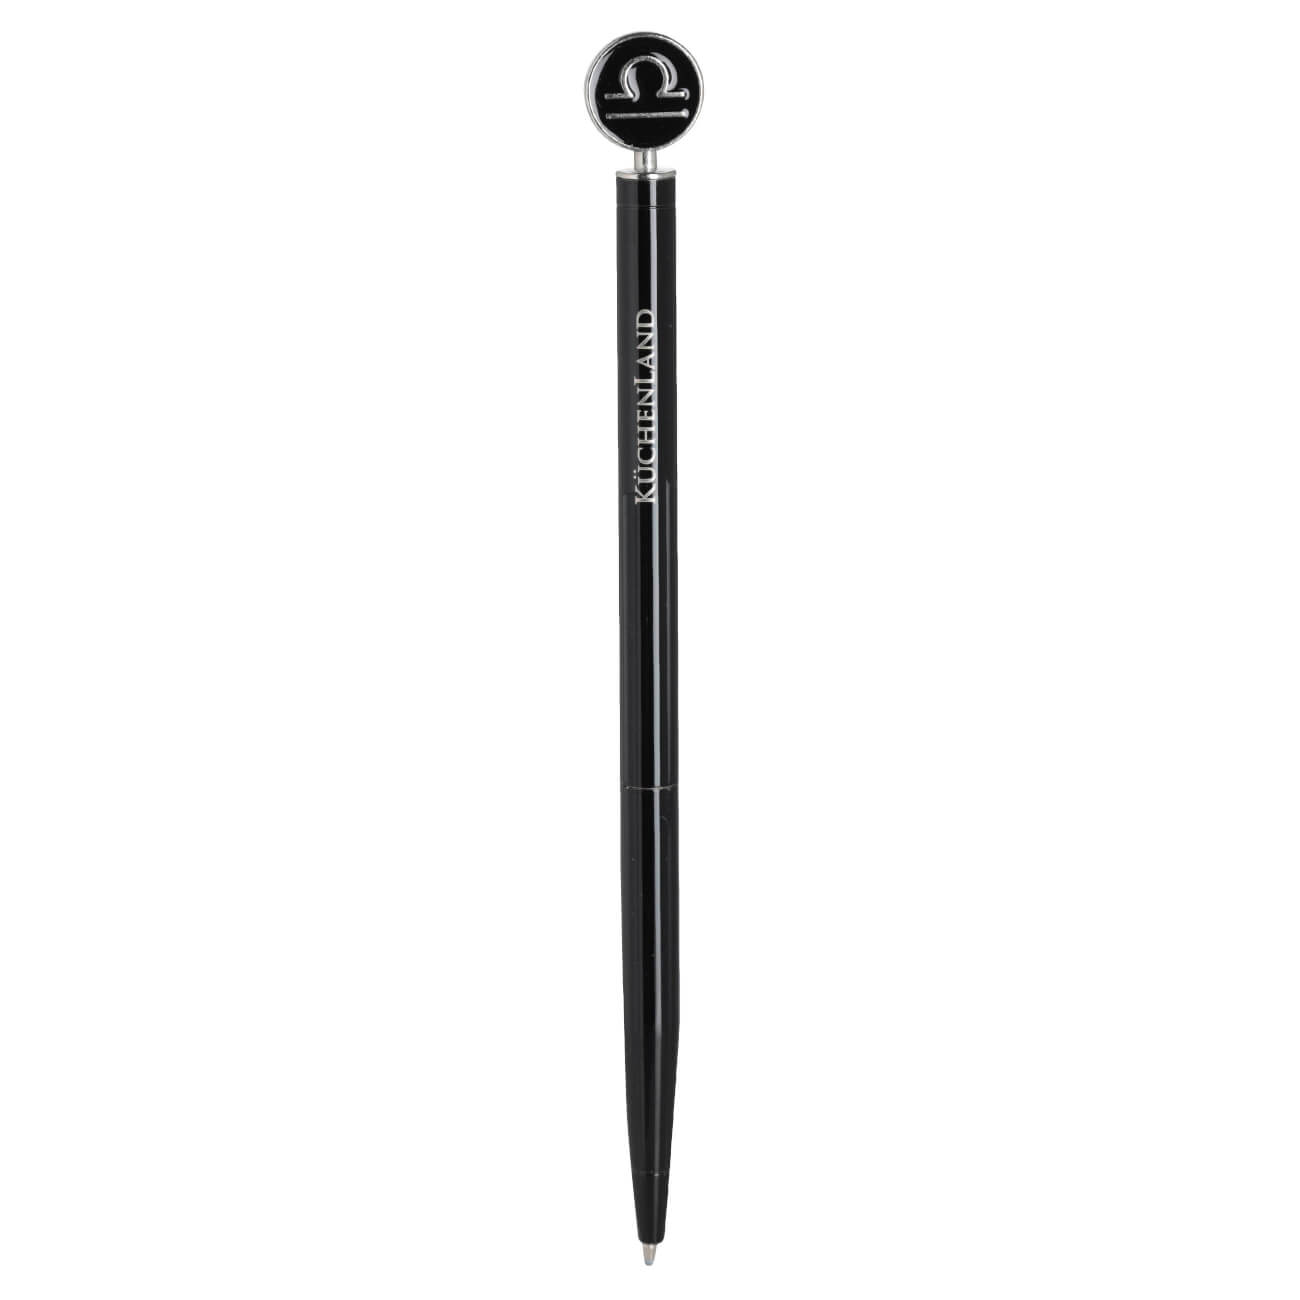 Ручка шариковая, 15 см, с фигуркой, сталь, черно-серебристая, Весы, Zodiac изображение № 1